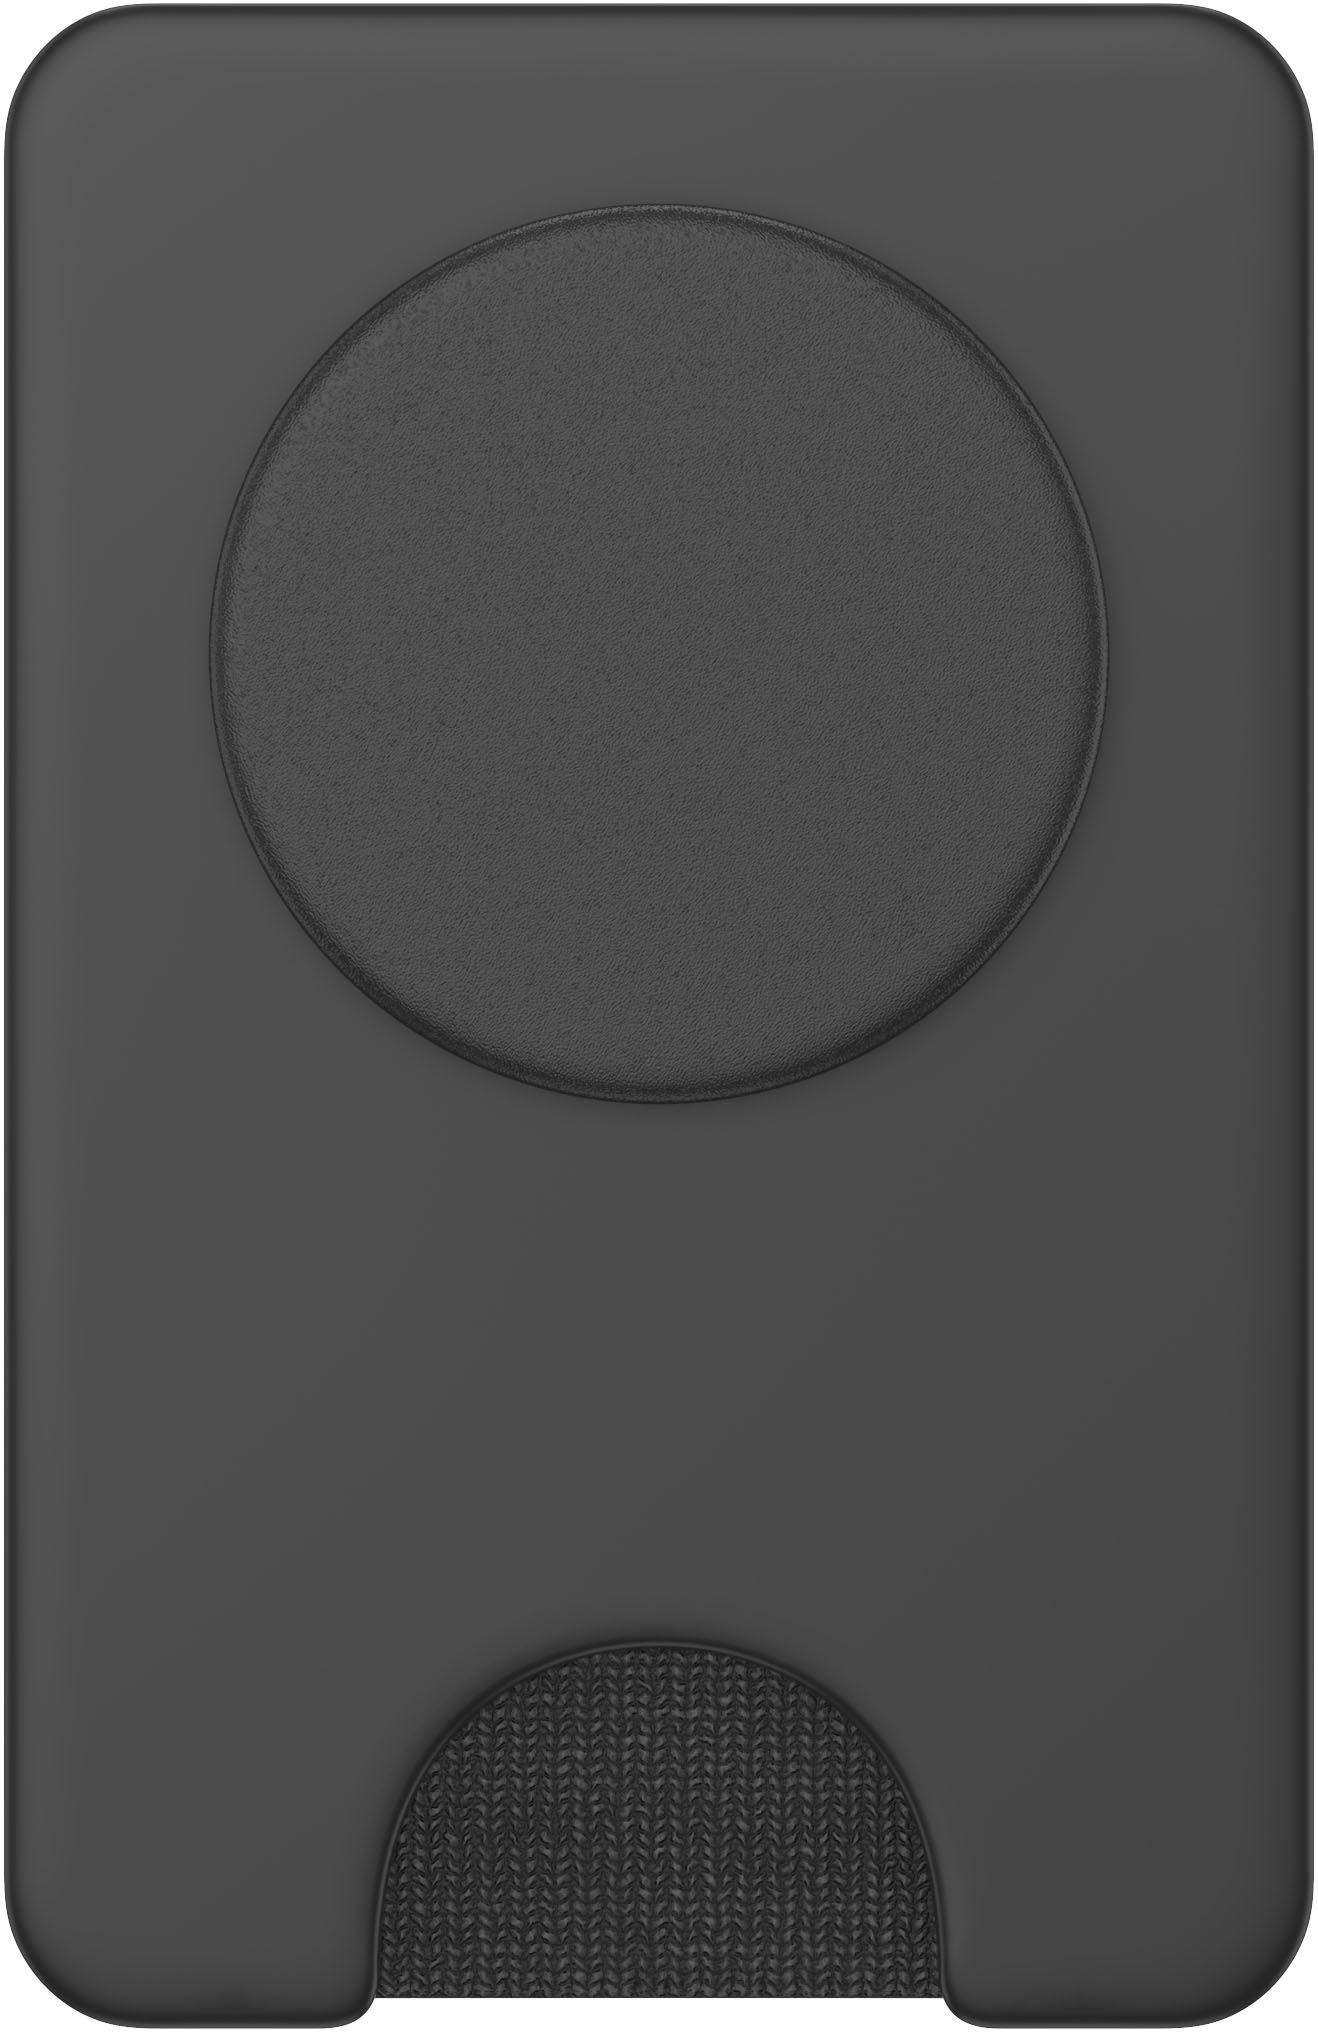 PopSockets PopWallet+ for MagSafe Devices Black 805668 - Best Buy | Best Buy U.S.